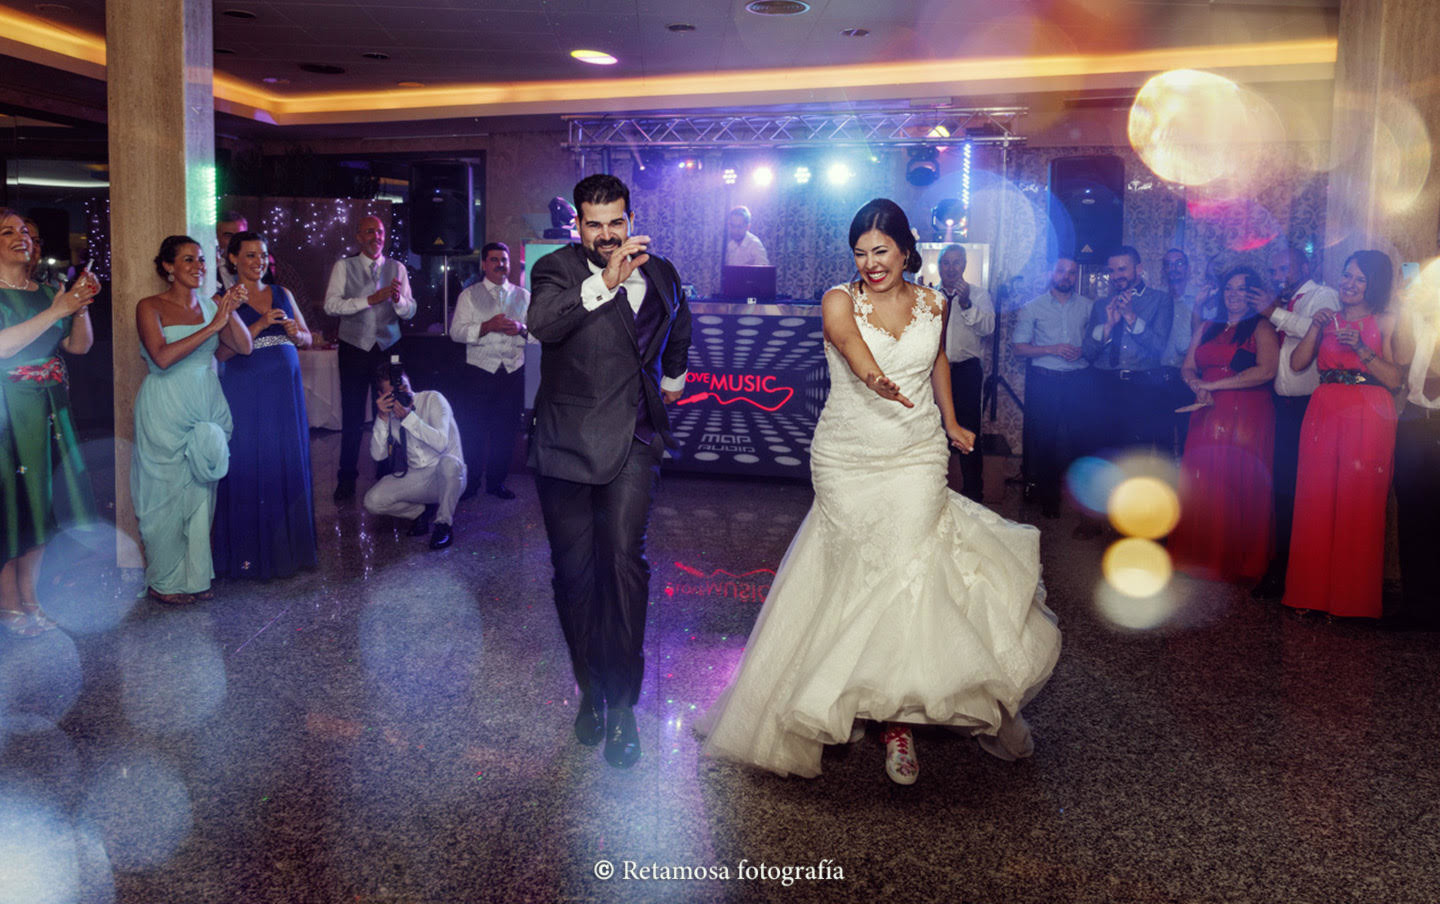 Retamosa fotografía bodas - Fotógrafo de bodas - baile-boda-3_202001300917475e329f3bdce70.sized.jpg